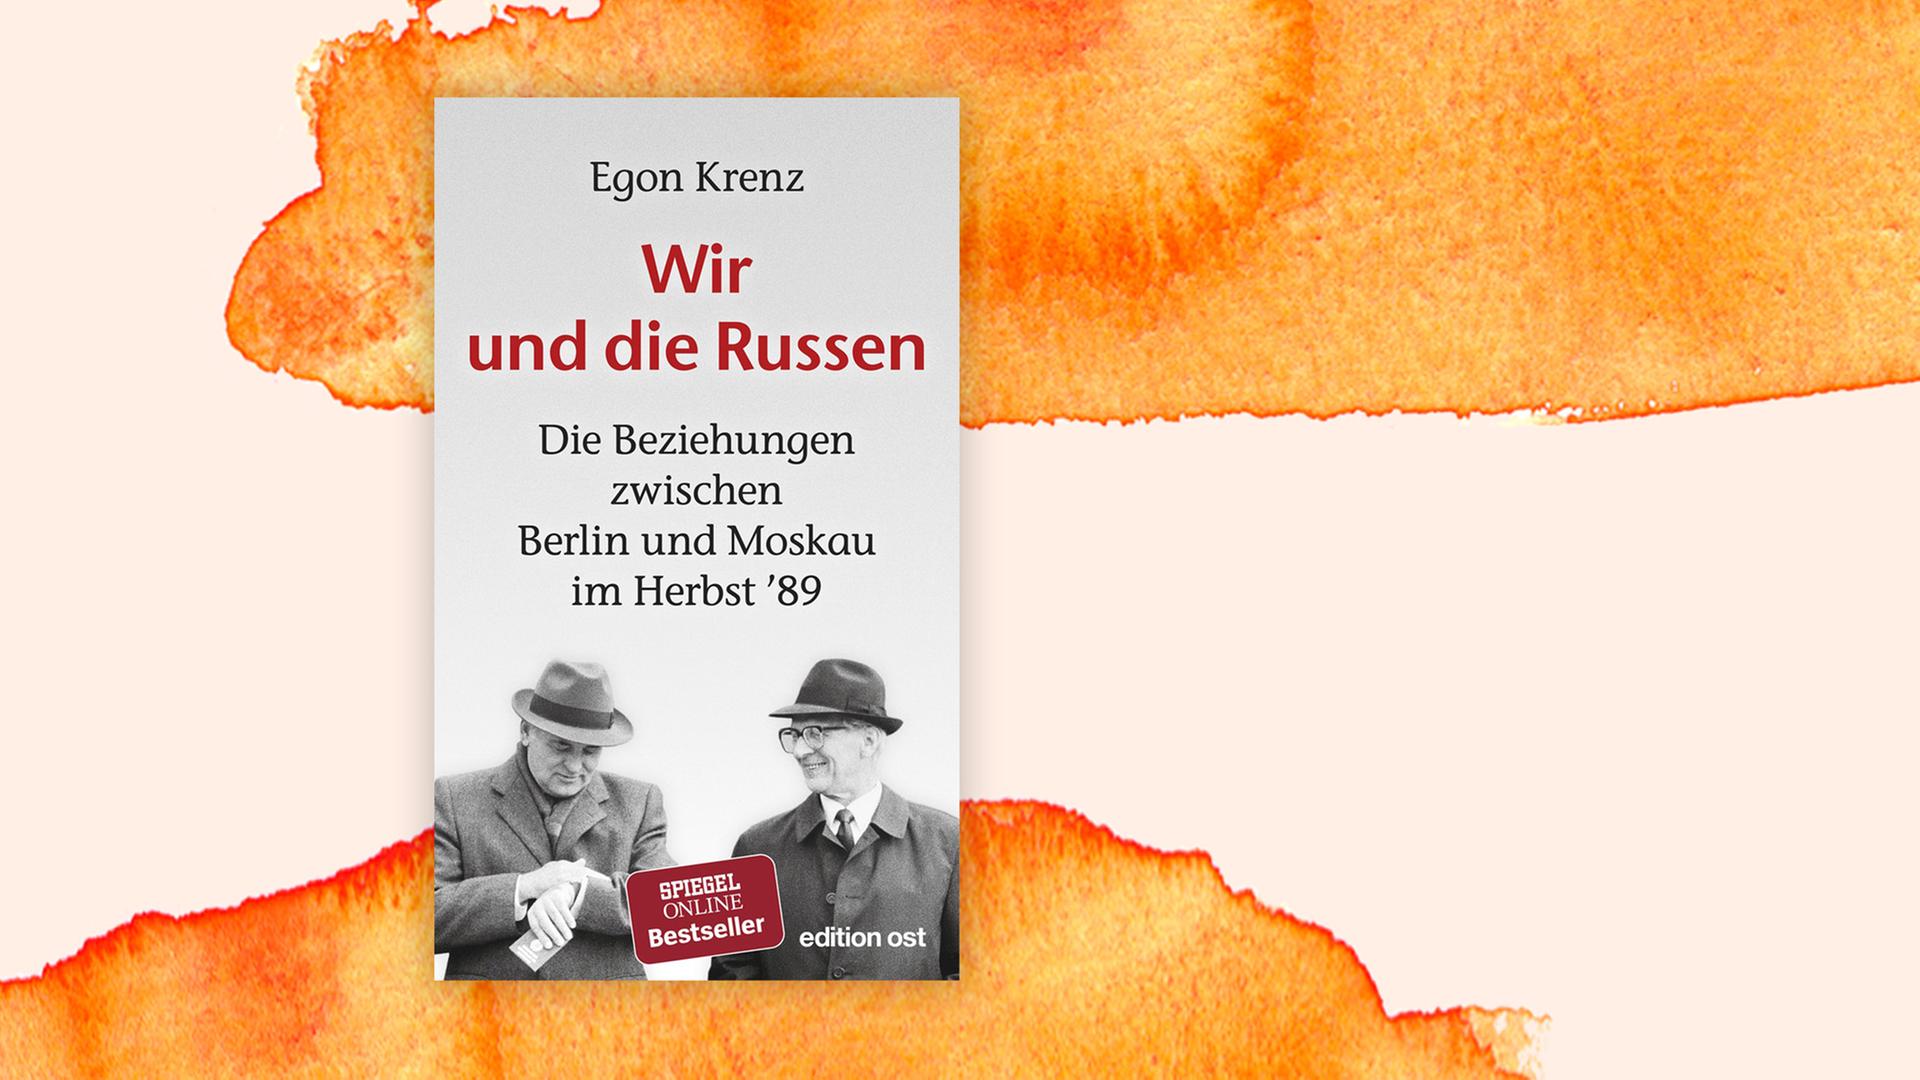 Buchcover zu "Wir und die Russen" von Egon Krenz.